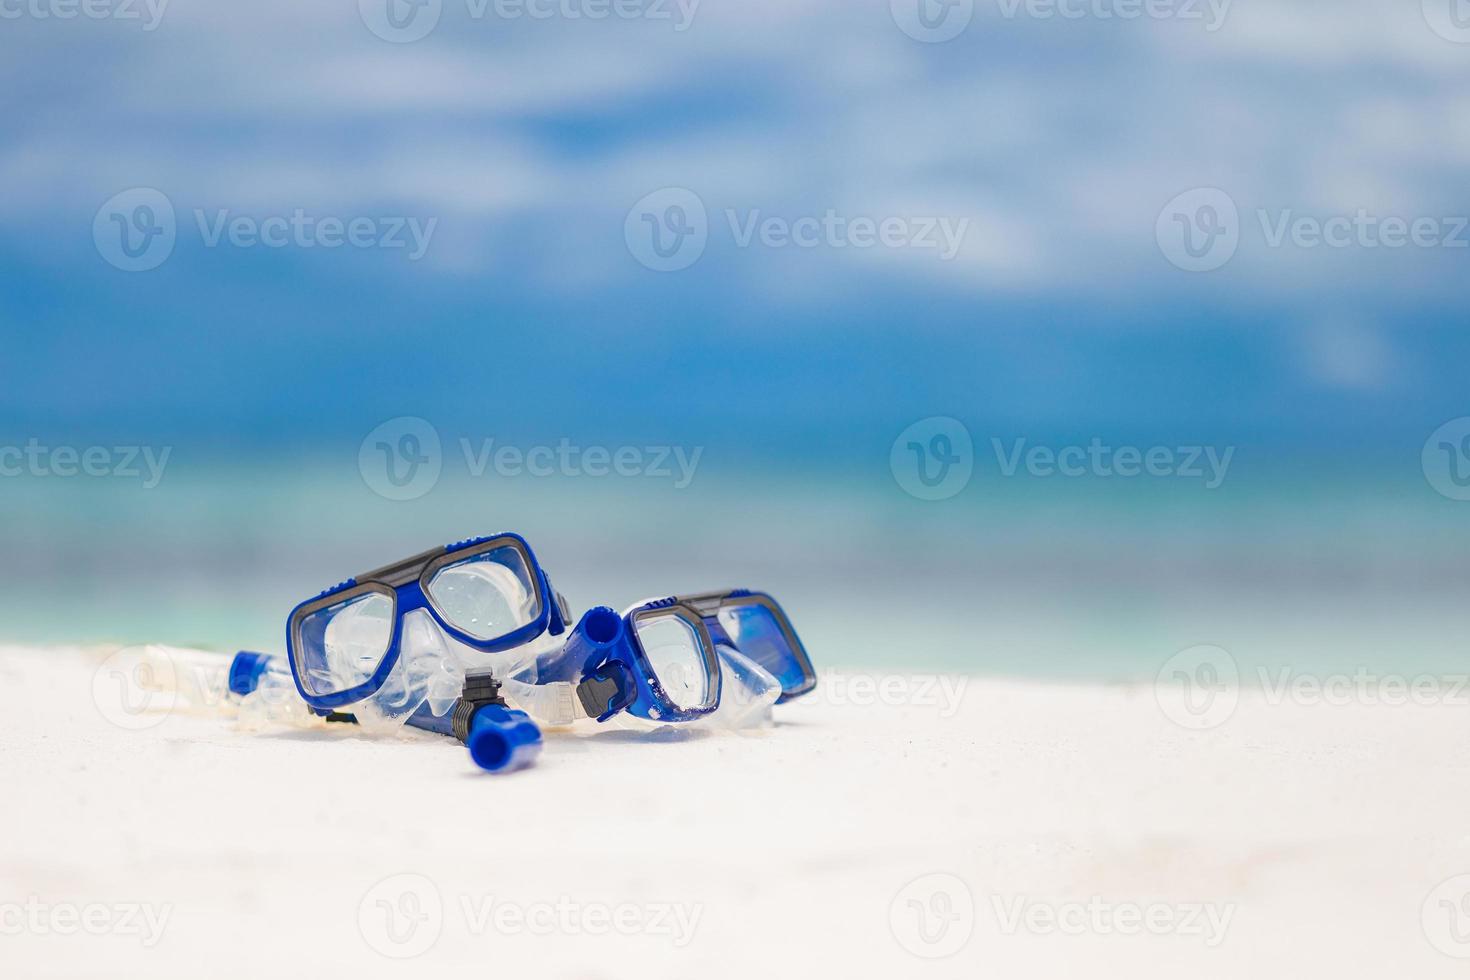 dykning glasögon och snorkel redskap på sandig strand. snorkling vatten sport och rekreations Utrustning, exotisk strand landskap, sommar semester och turism begrepp foto